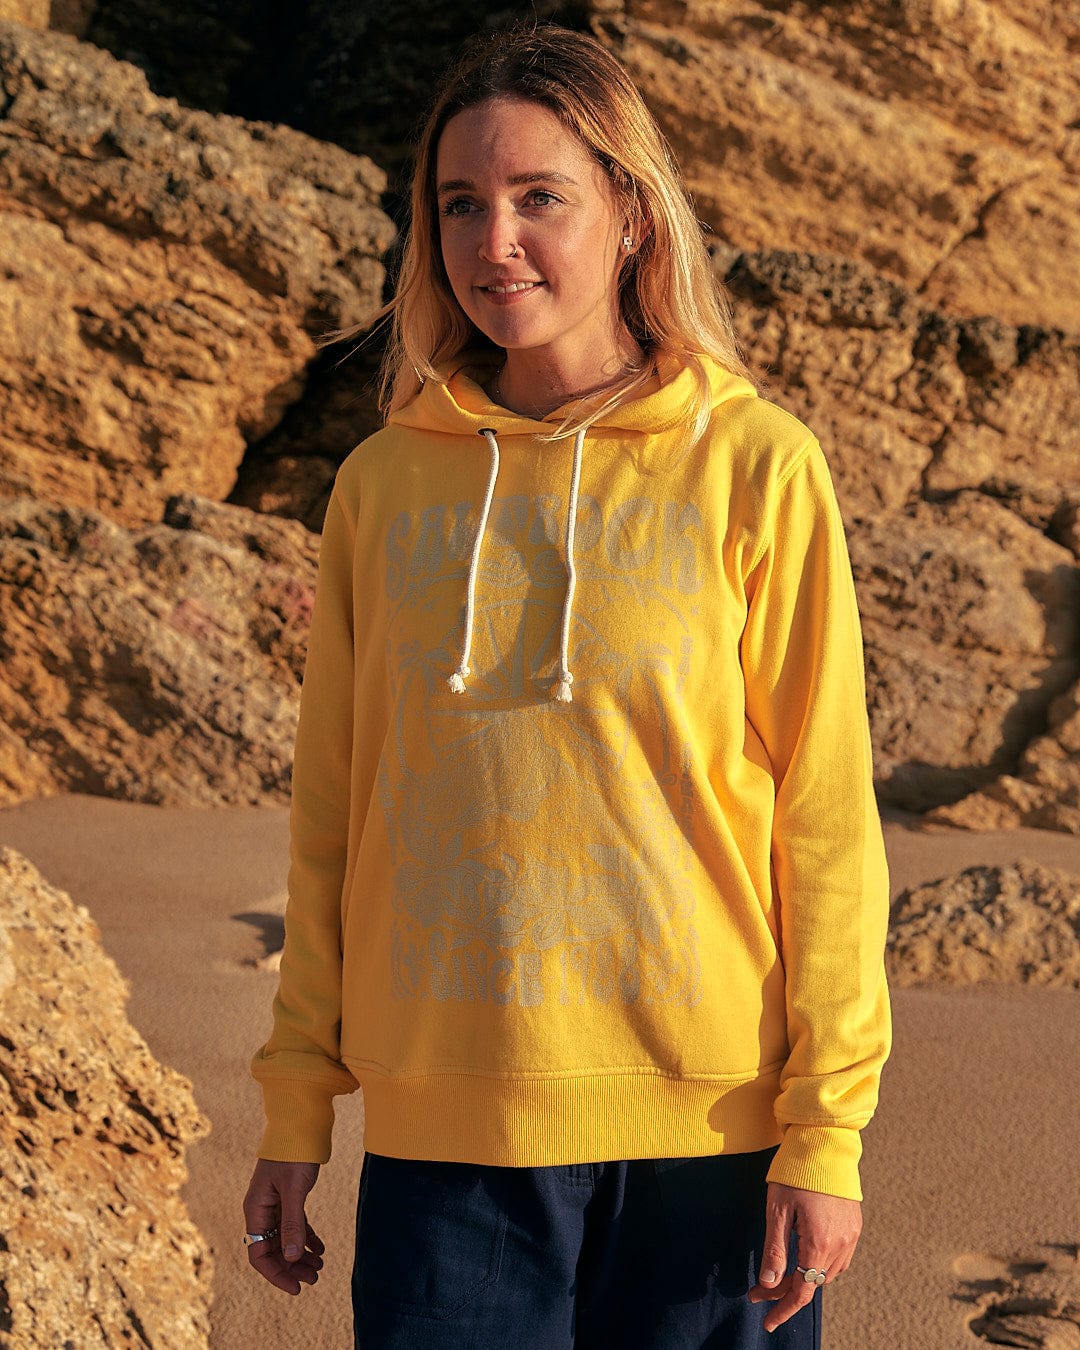 A woman wearing a Saltrock Dreamseeker - Womens Pop Hoodie - Yellow standing on a beach.